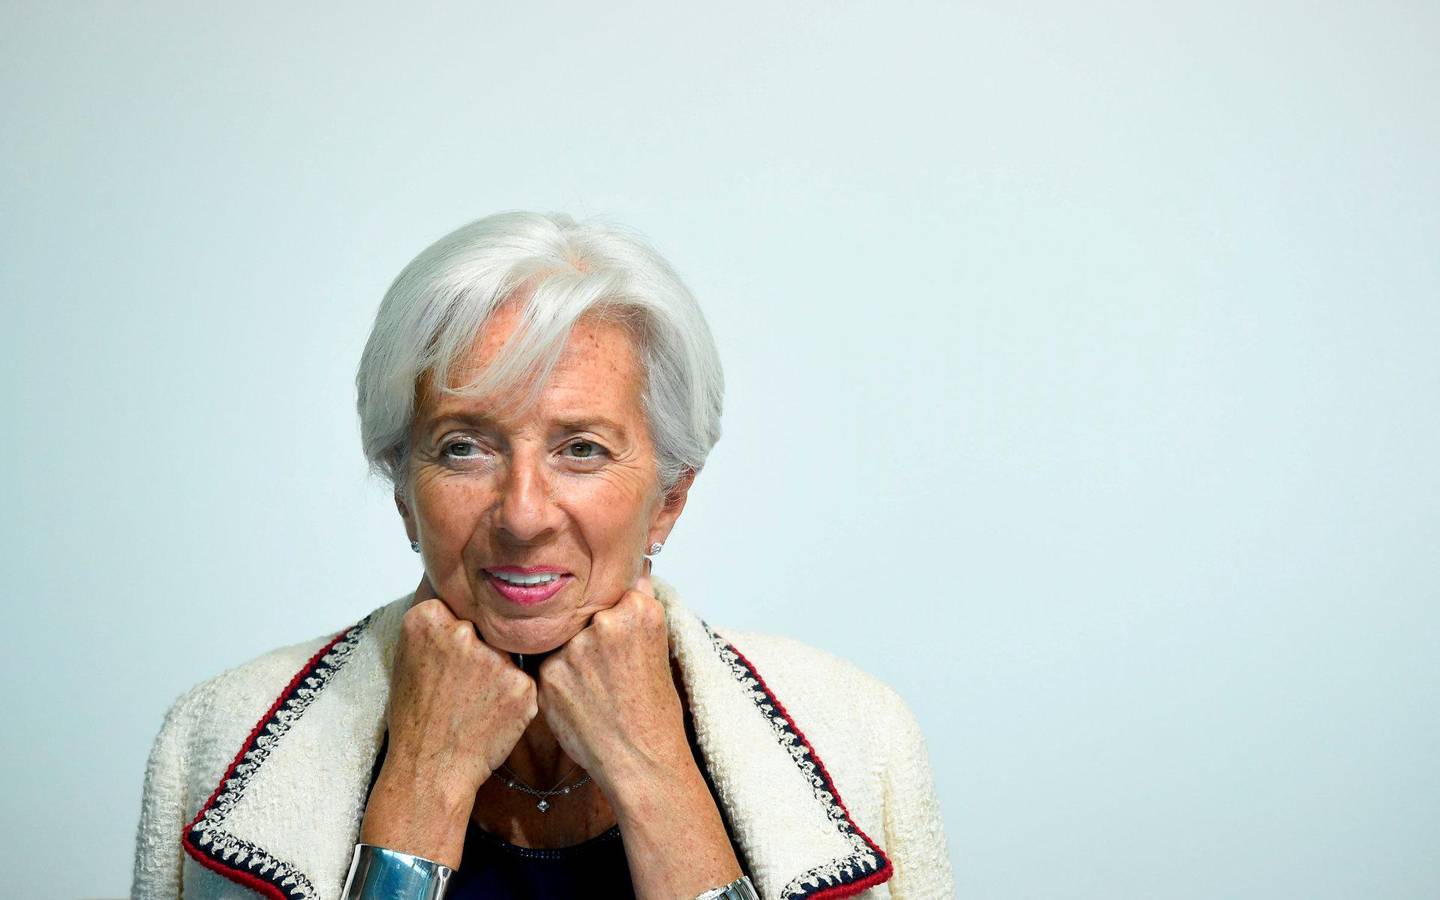 sentralbanken: Christine Lagarde er nominert til president for Den europeiske sentralbanken. FOTO: NTB SCANPIX